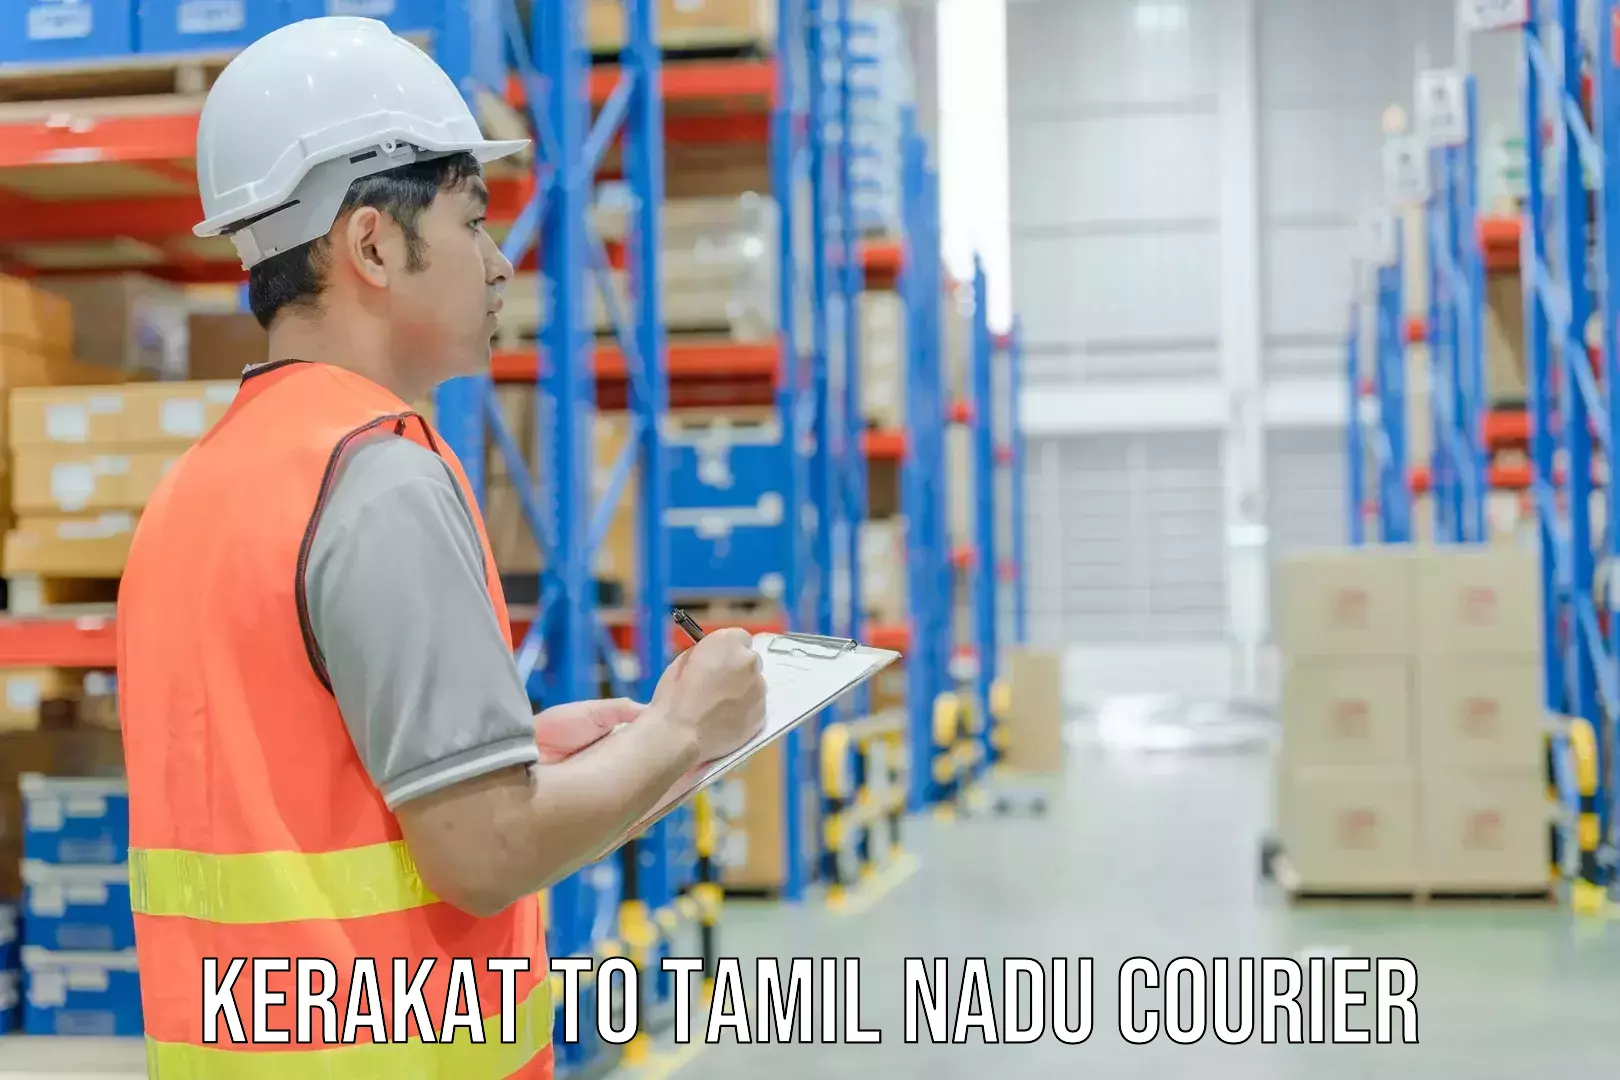 Bulk courier orders Kerakat to Thisayanvilai